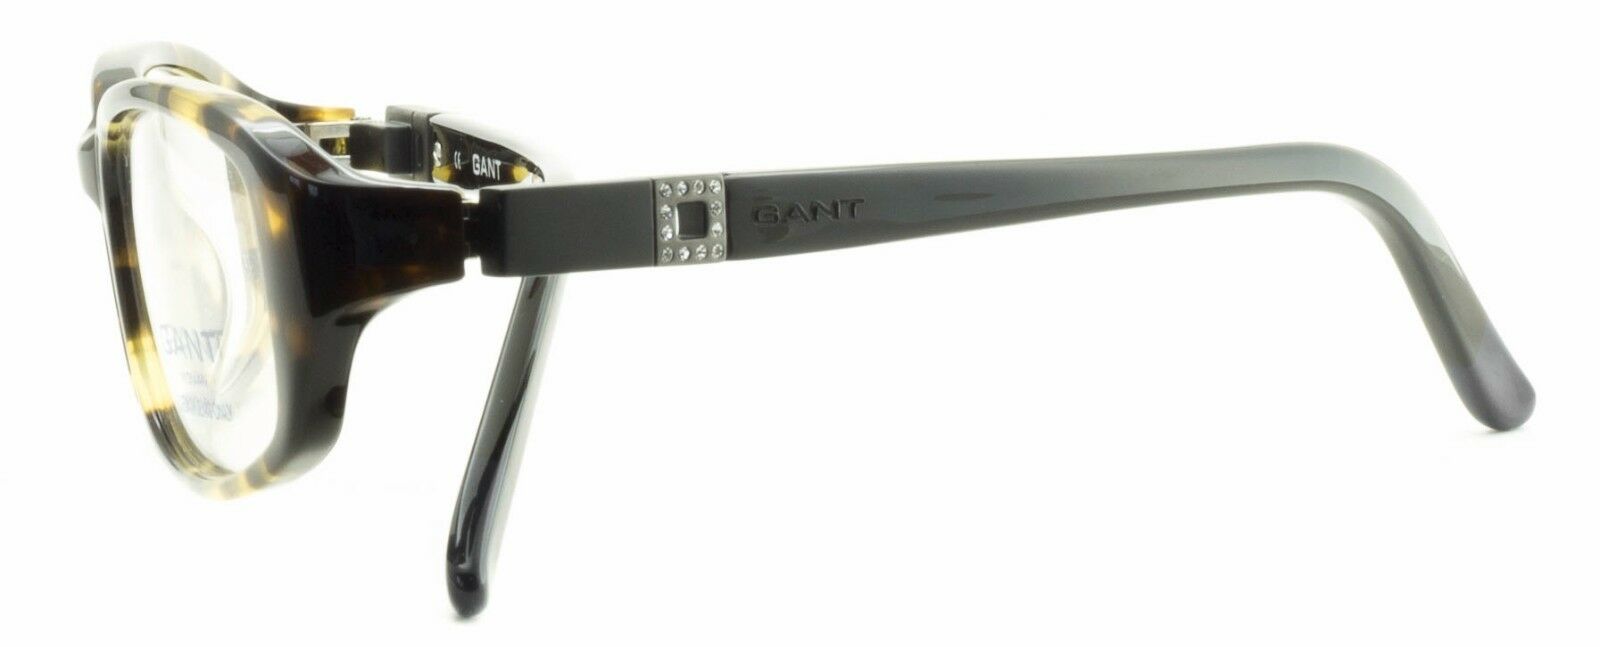 GANT GW FIONA TO RX Optical Eyewear FRAMES Glasses Eyeglasses New BNIB- TRUSTED